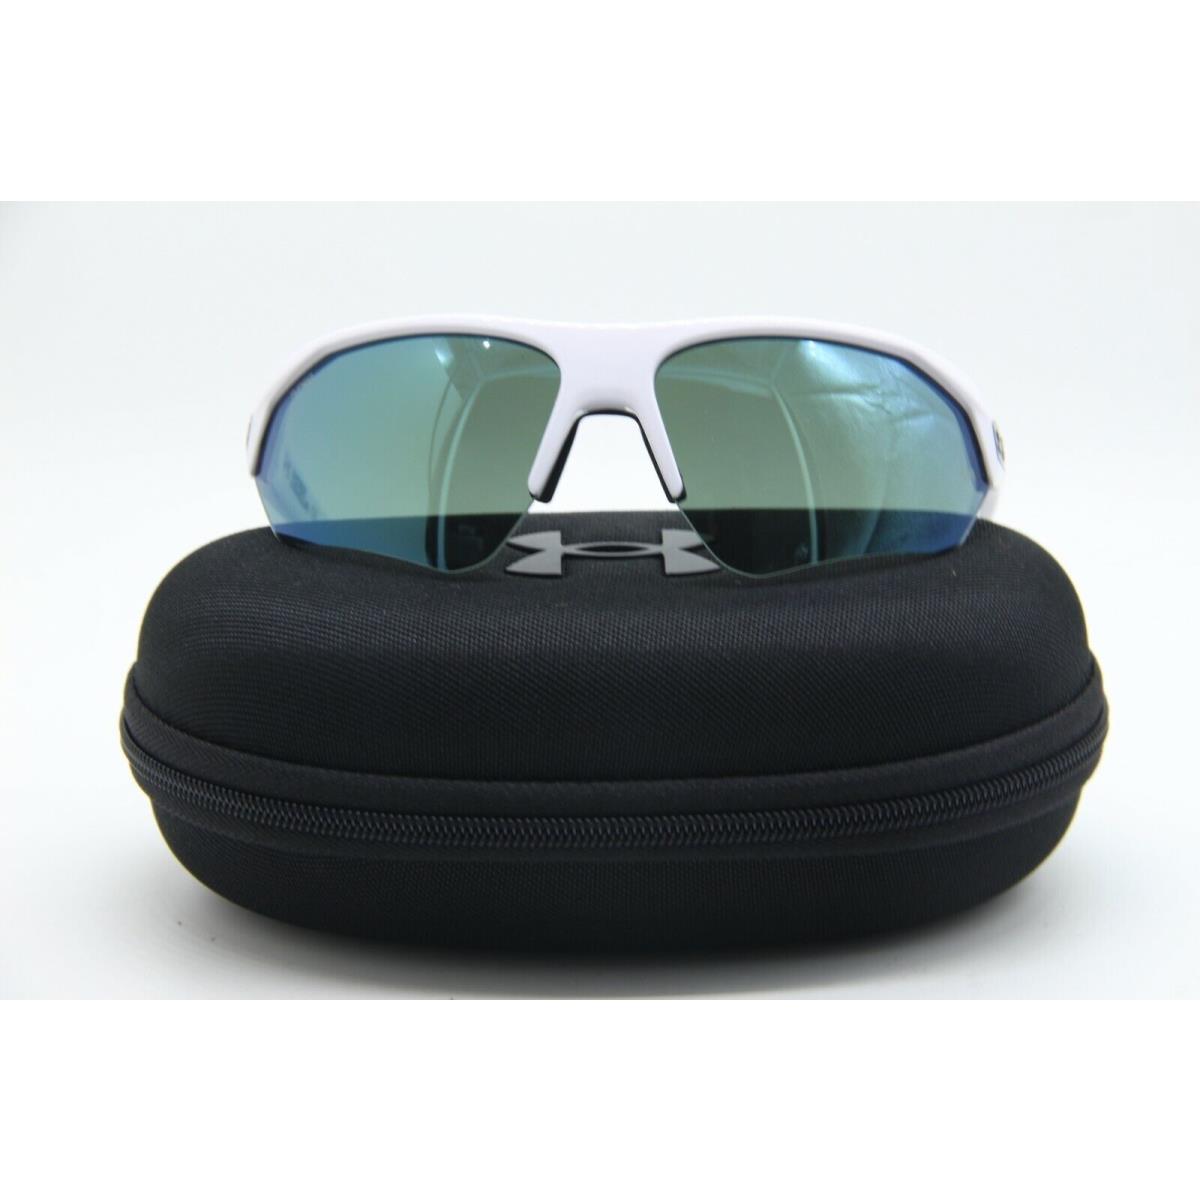 Under Armour sunglasses  - Frame: WHITE BLACK, Lens: Green 0